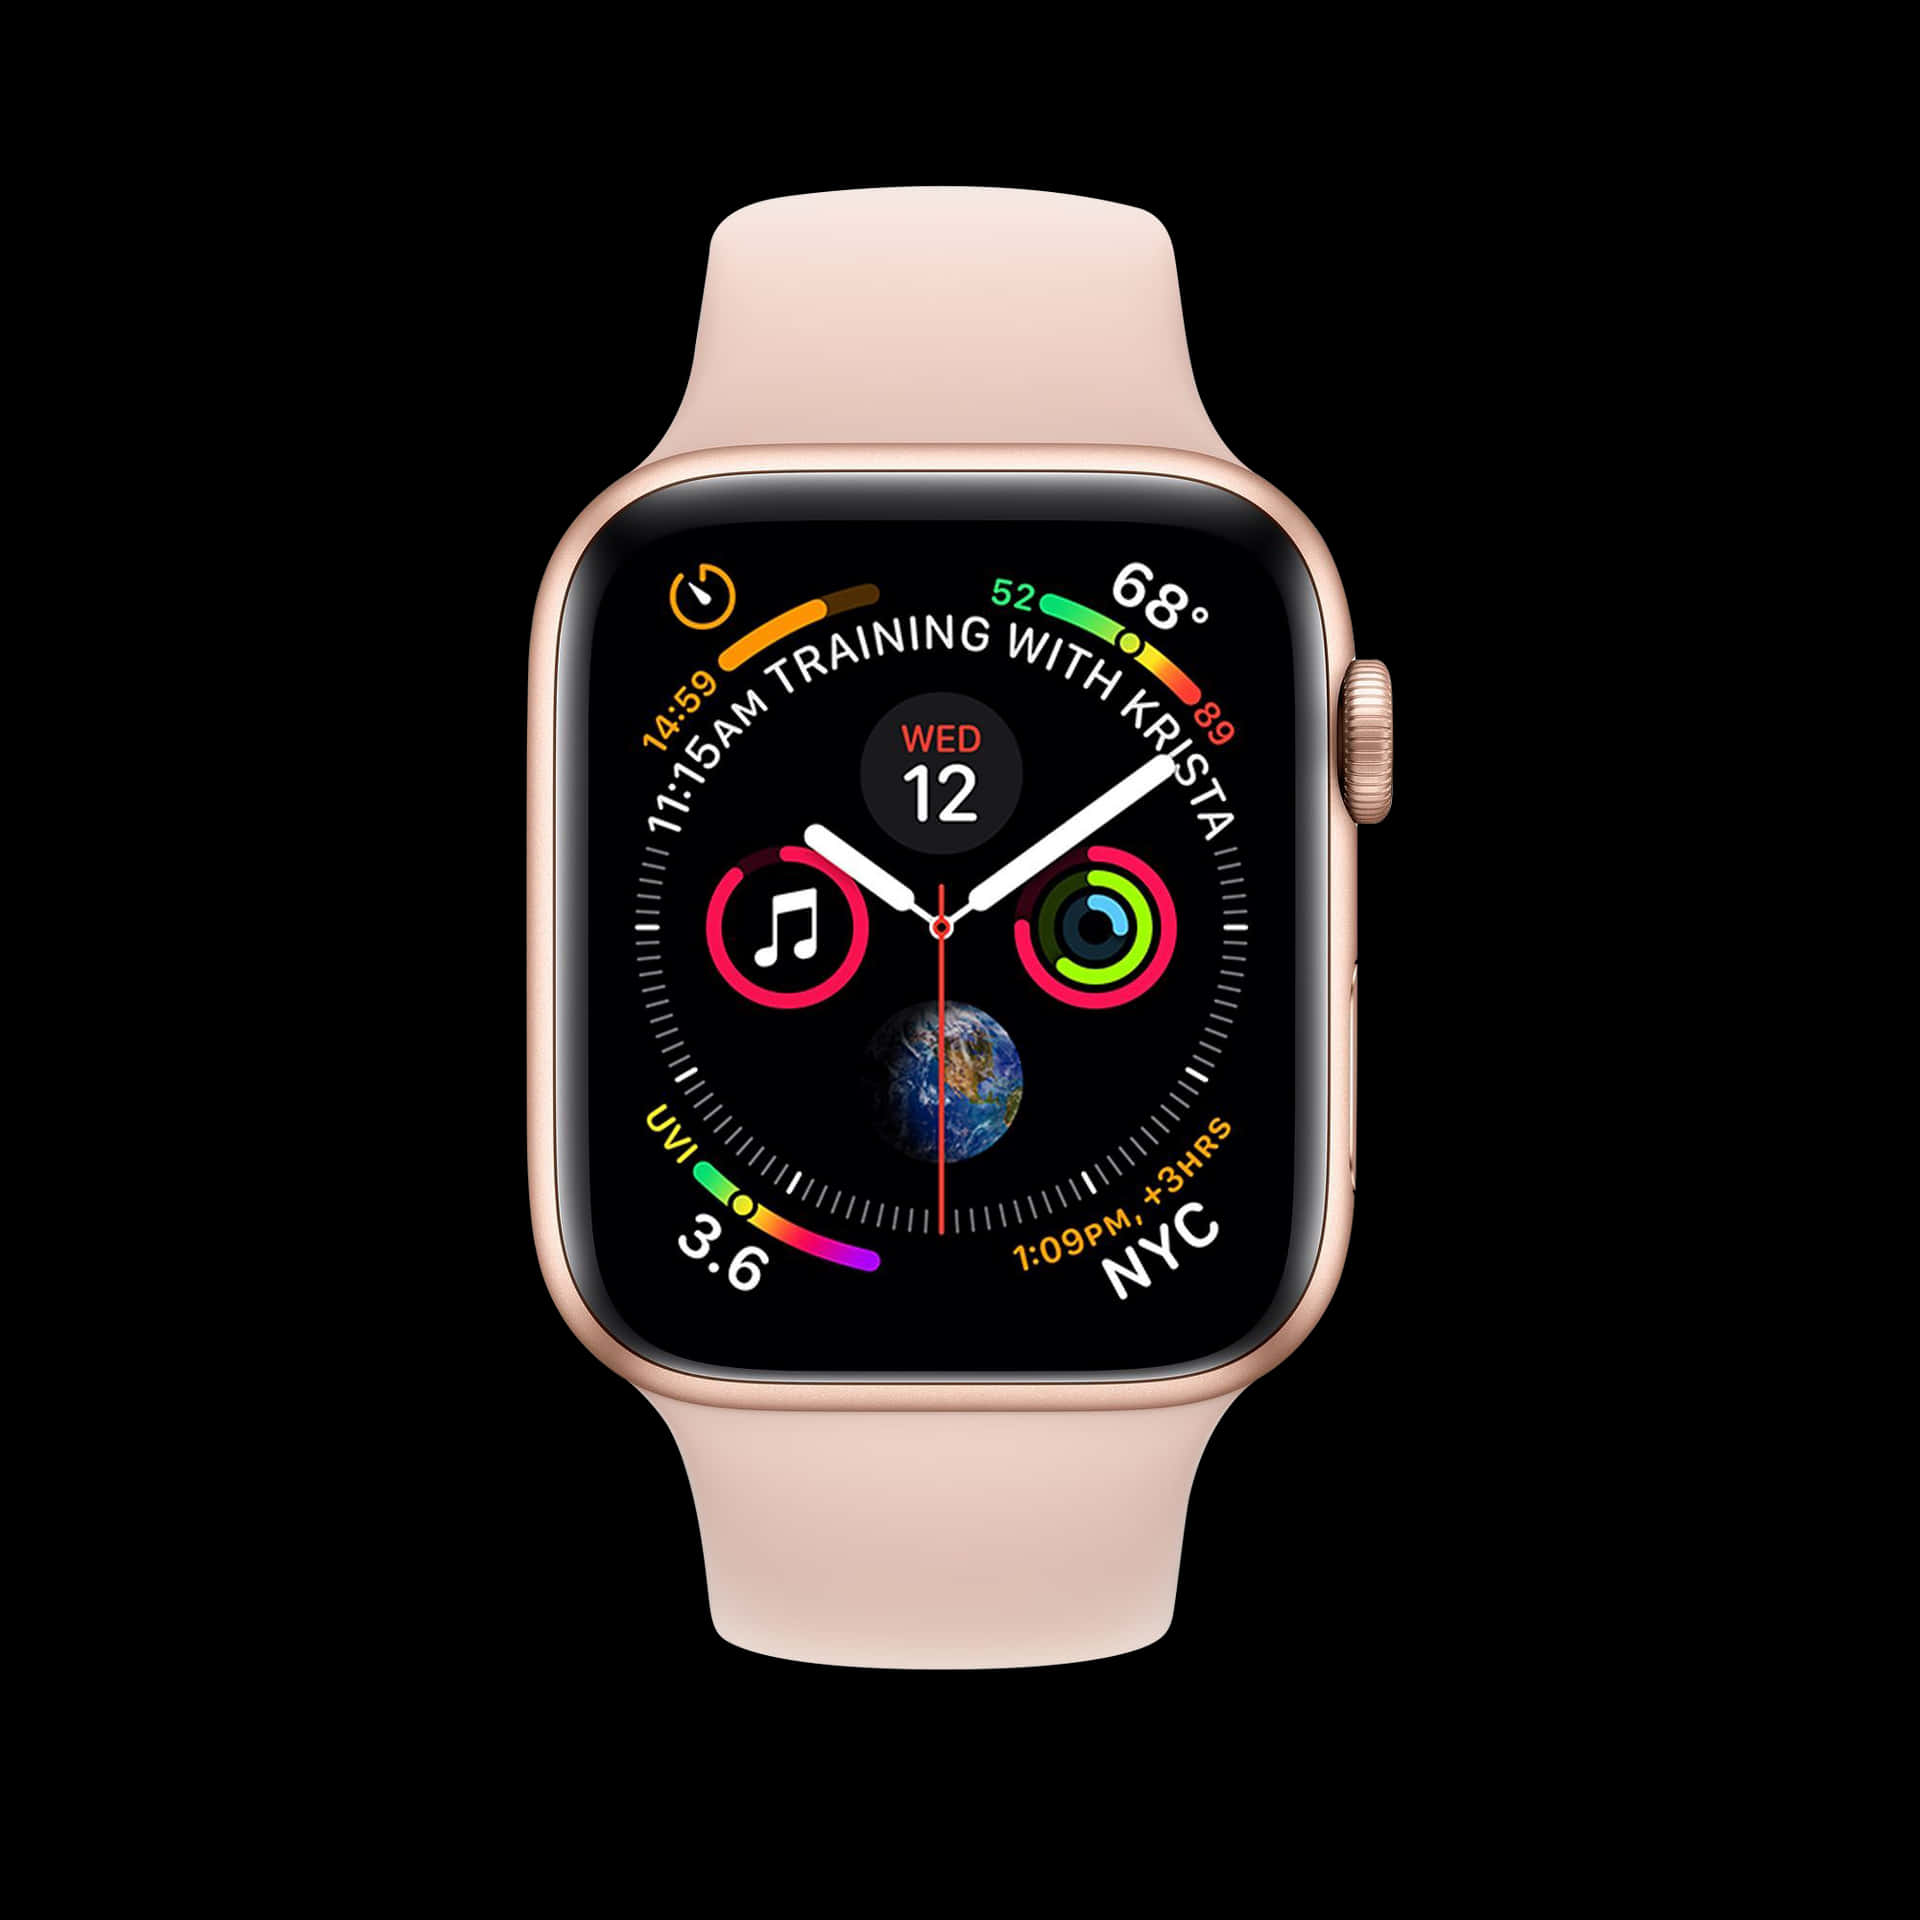 Preparese Para Levar Sua Experiência De Iphone Para O Próximo Nível Com O Apple Watch.